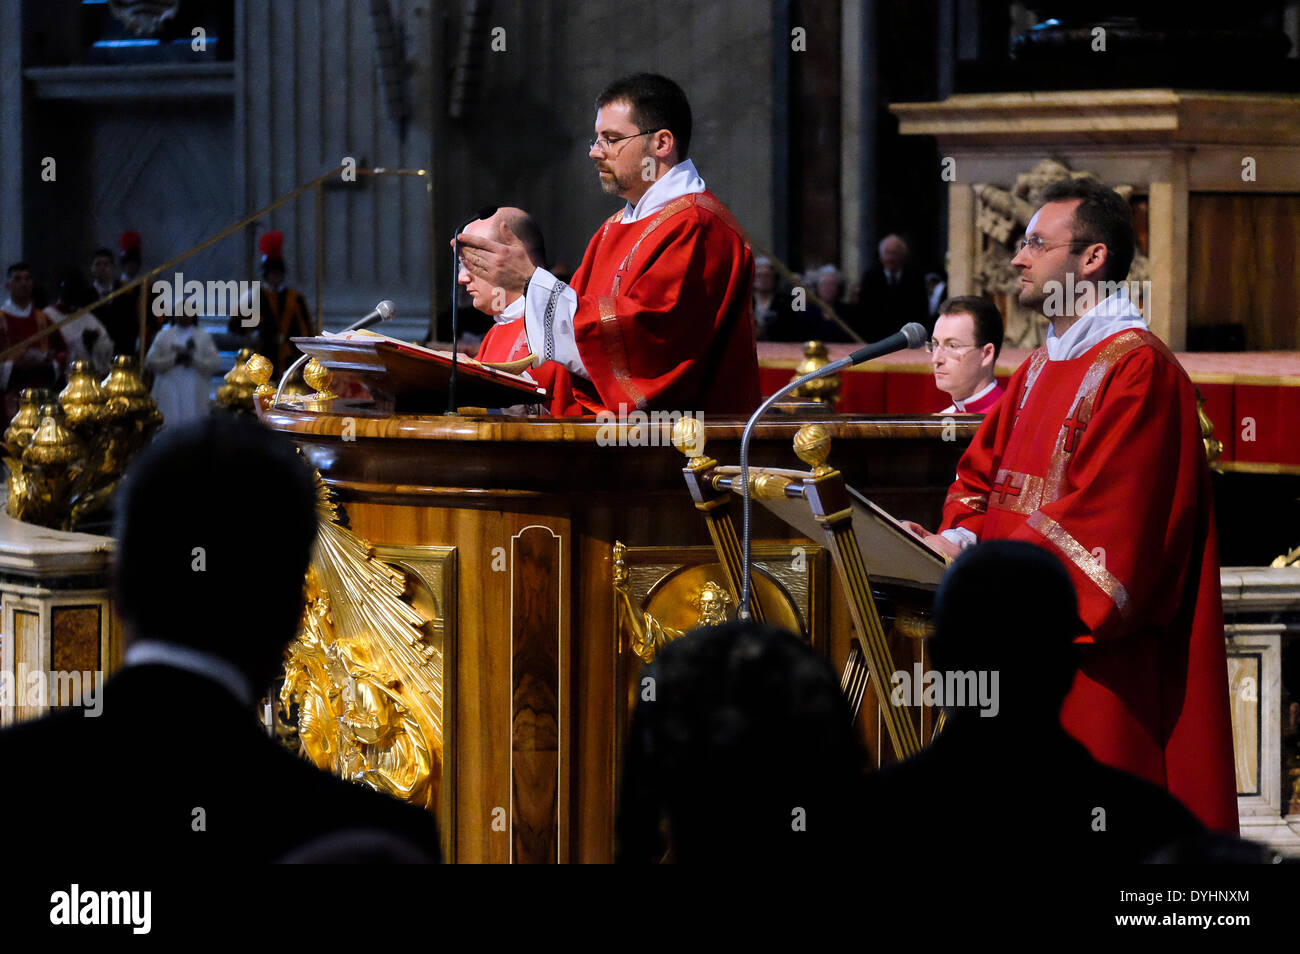 Rom, Italien. 18. April 2014Holy Masse von der Passion Christi – 18. April 2014 Credit: wirklich einfach Star/Alamy Live-Nachrichten Stockfoto